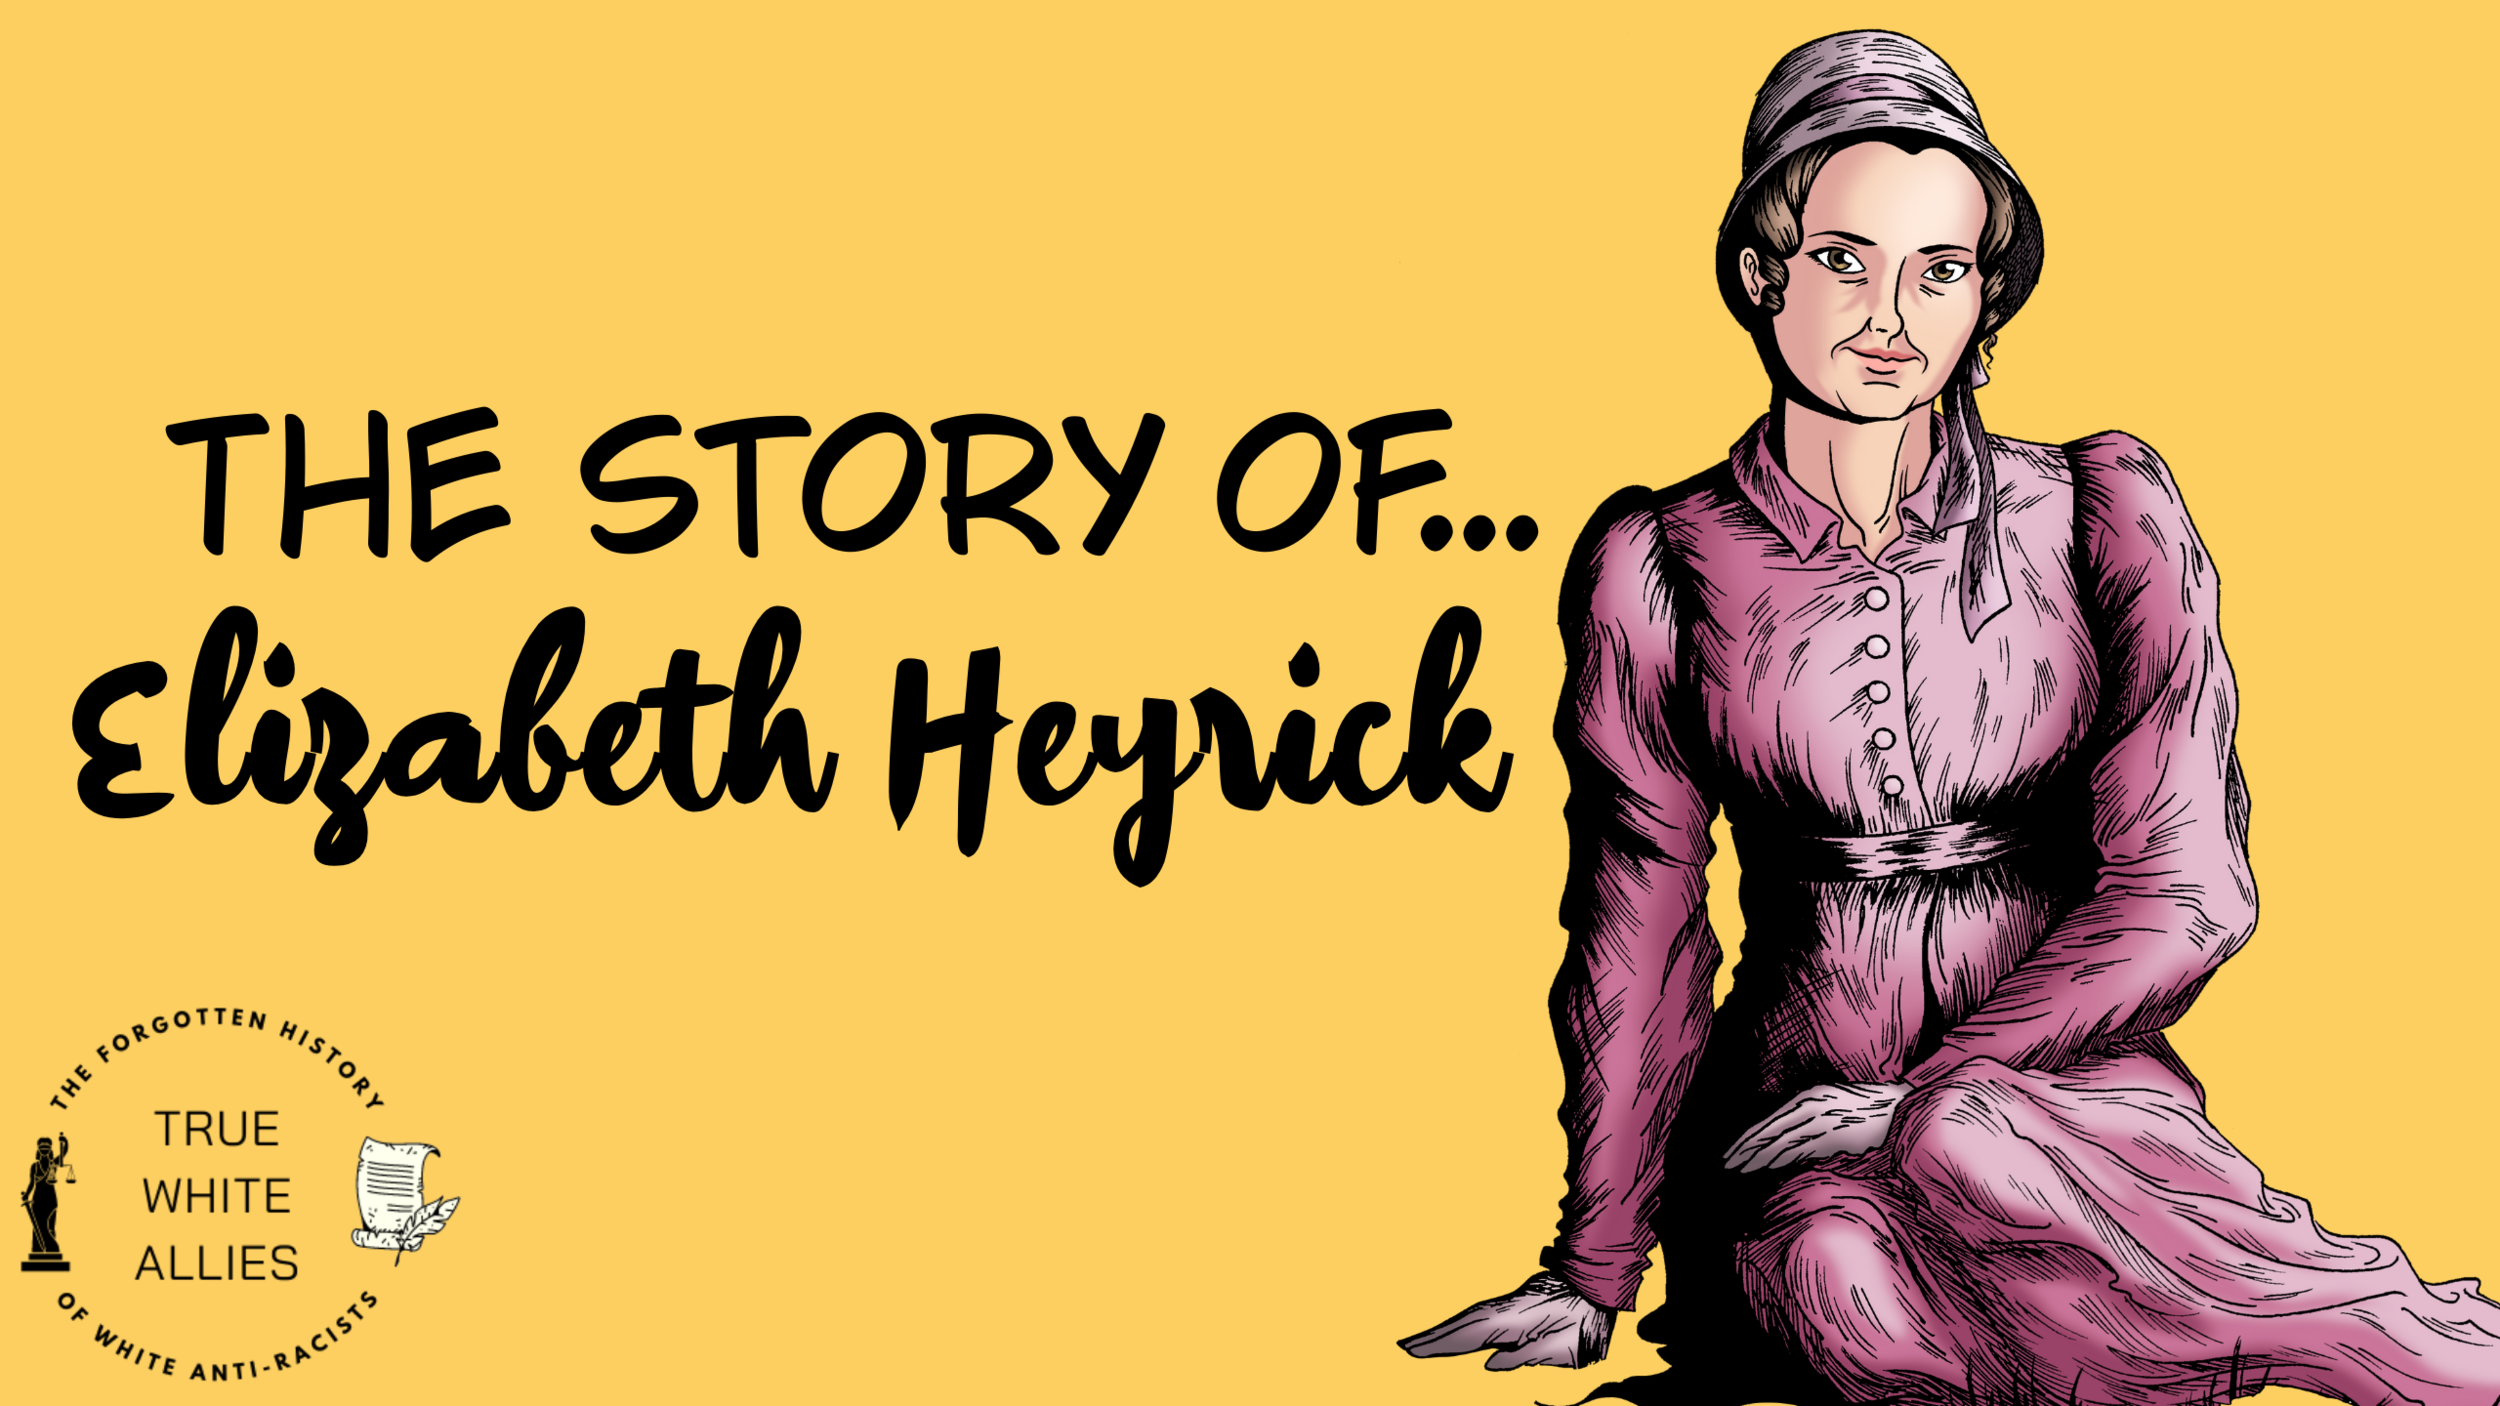 The Story of Elizabeth Heyrick (Copy) (Copy) (Copy) (Copy) (Copy)